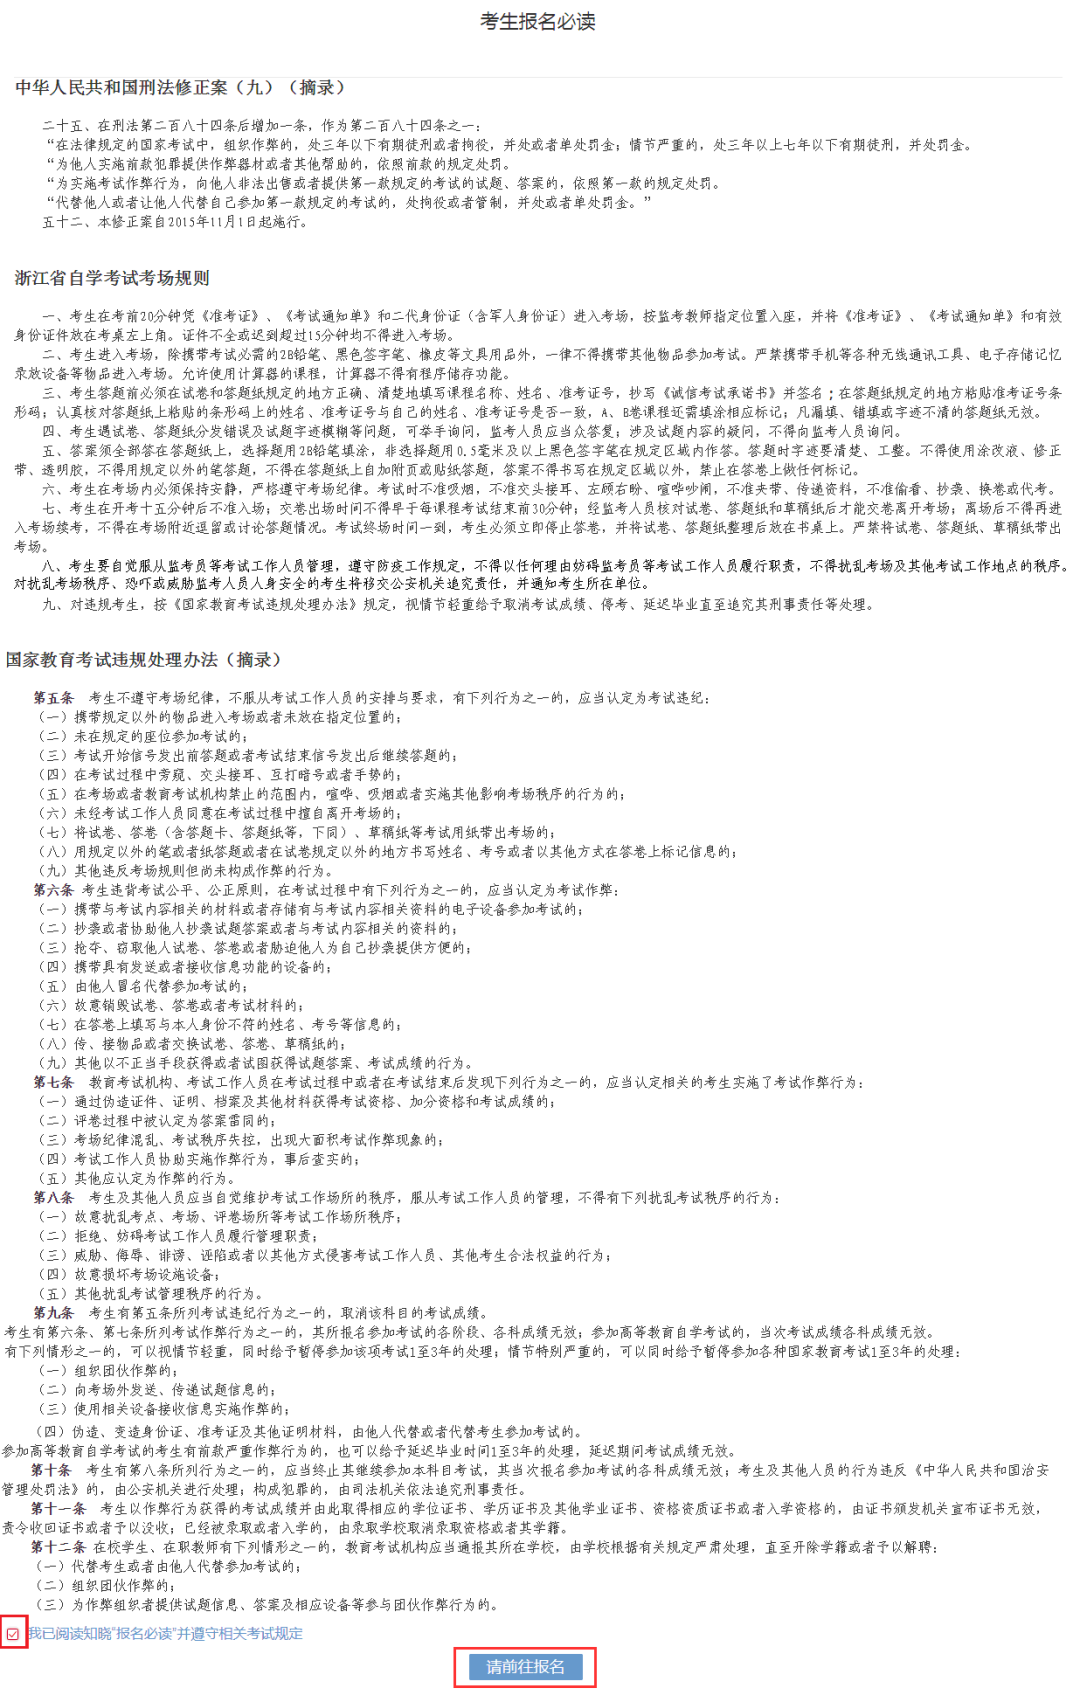 浙江省自学考试网上报名报考及缴费详细流程(图6)